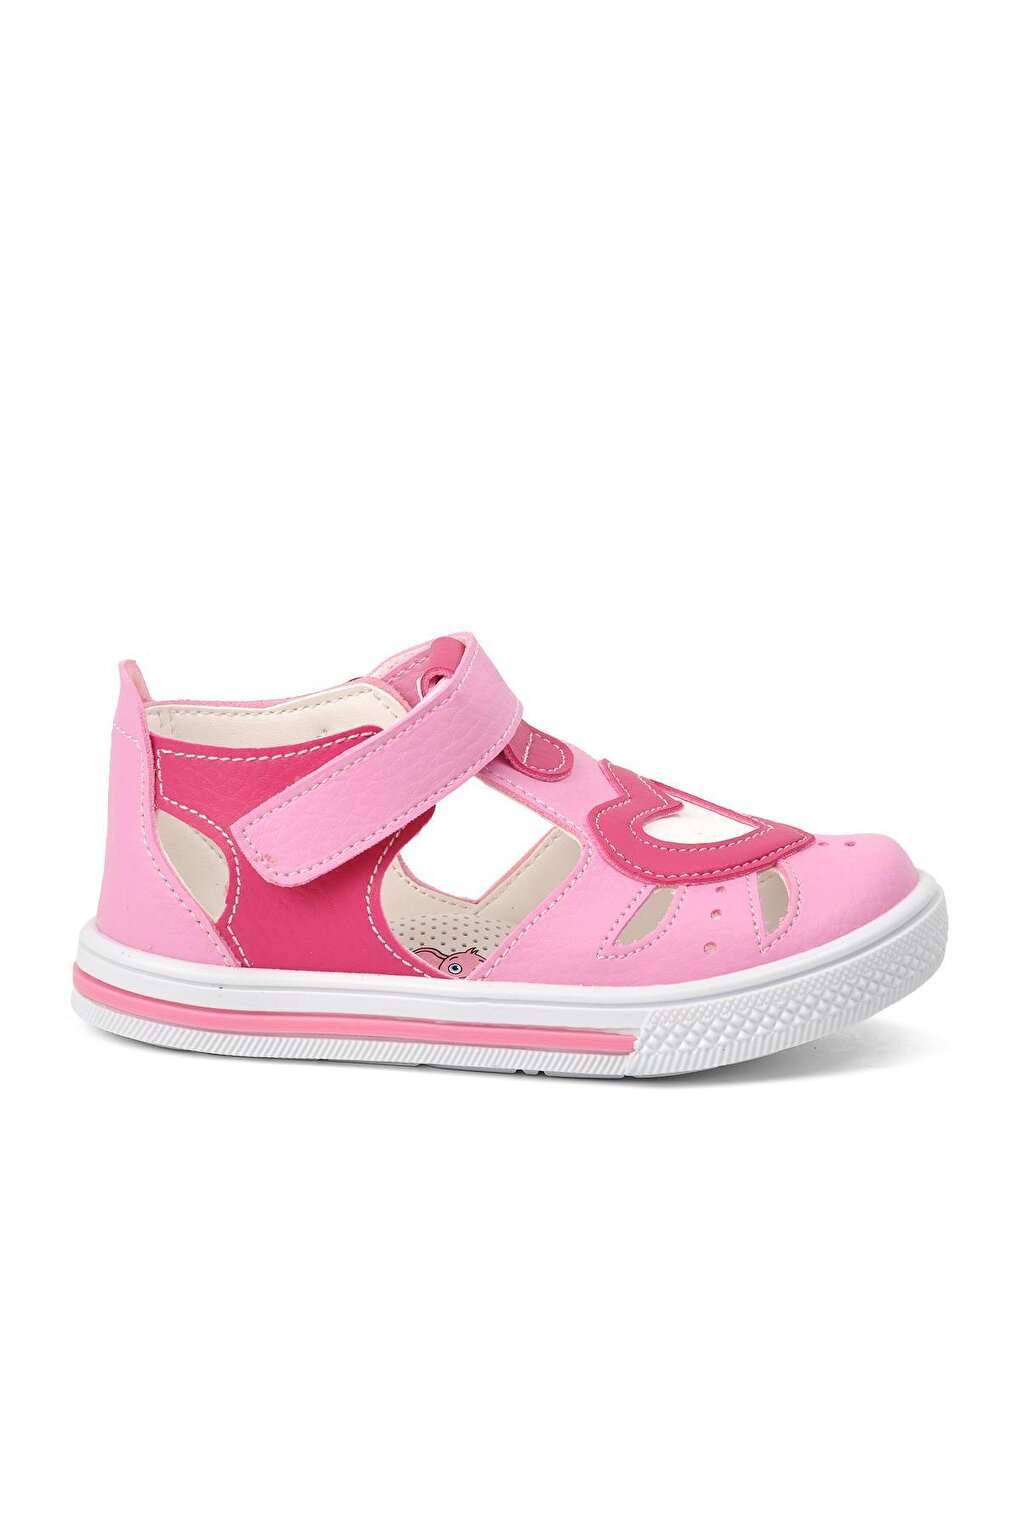 210103 Летняя обувь для маленьких девочек розово-фуксия Ayakmod